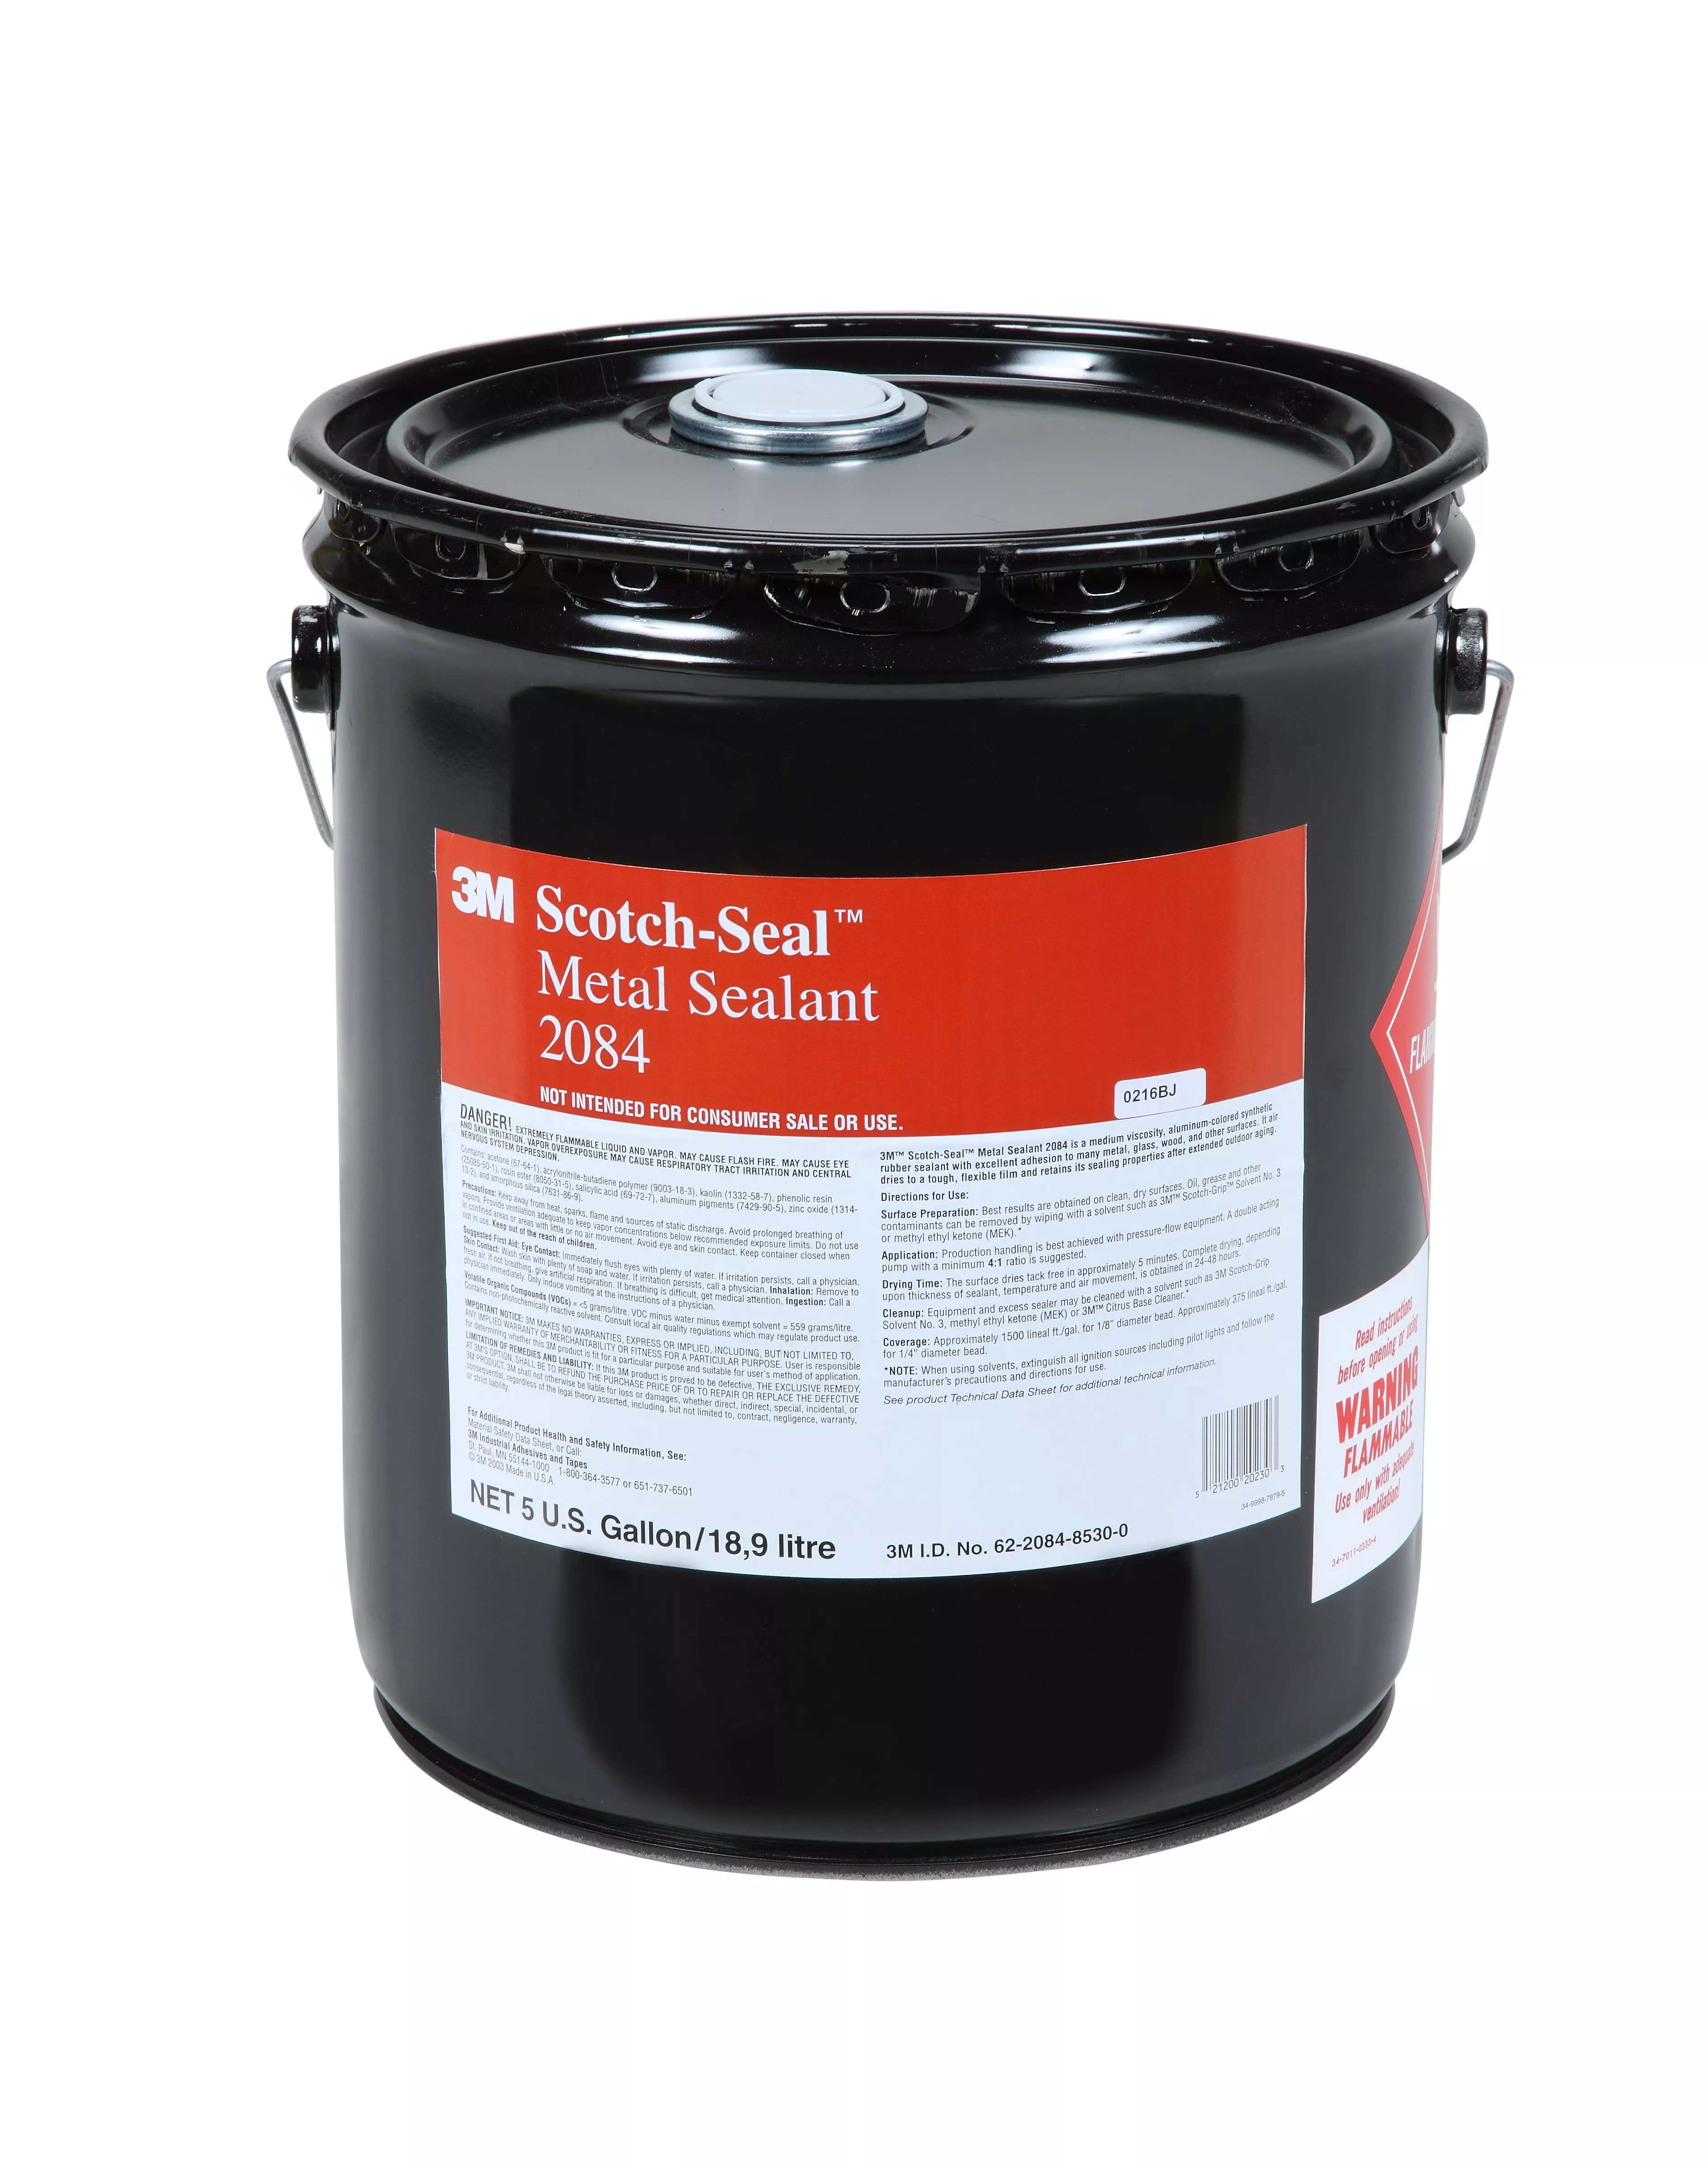 3M™ Scotch-Seal™ Metal Sealant 2084, Silver, 5 Gallon (Pail), 1 Can/Case